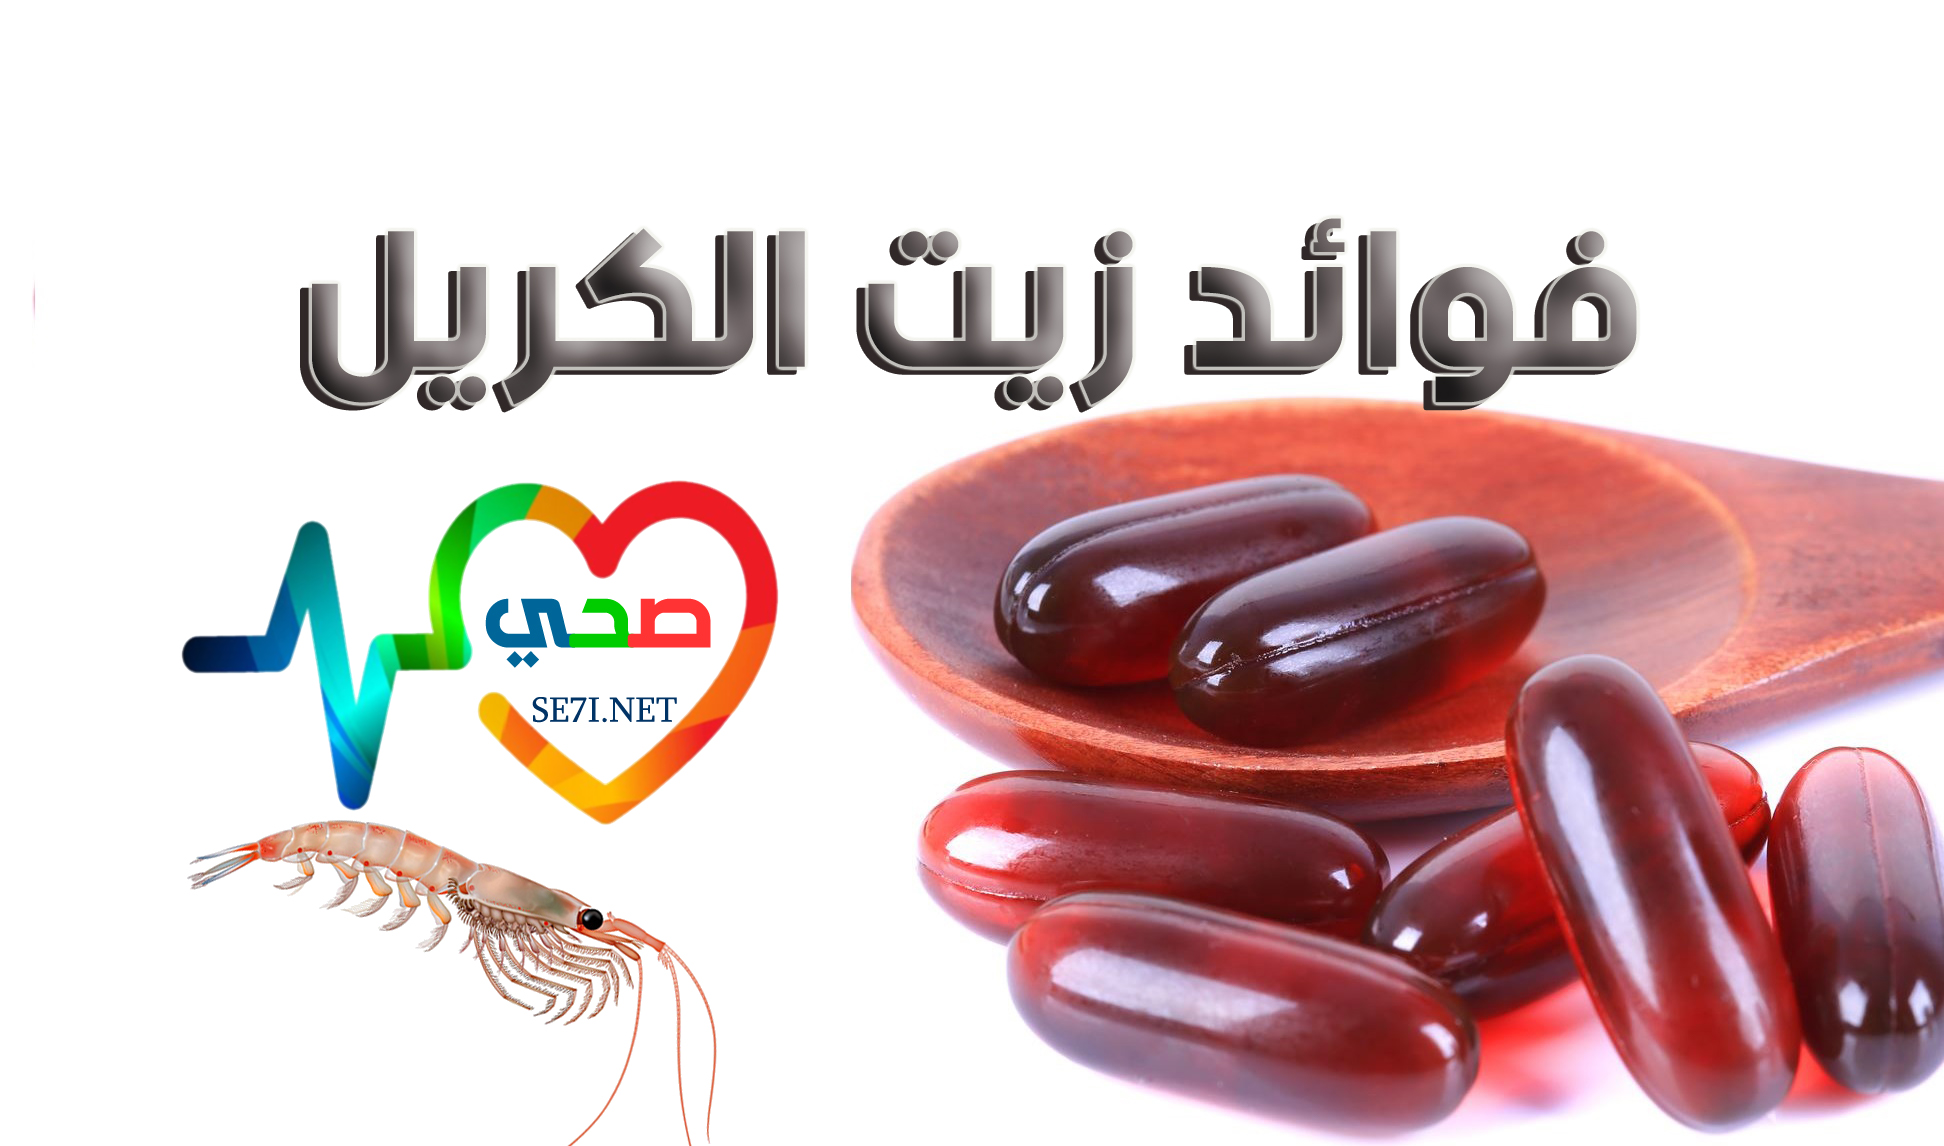 أفضل - زيت الكريل Krill Oil أفضل مصادر الأحماض الدهنية OMEGA3,6,9 في الطبيعة Se7i-net-krill-oil